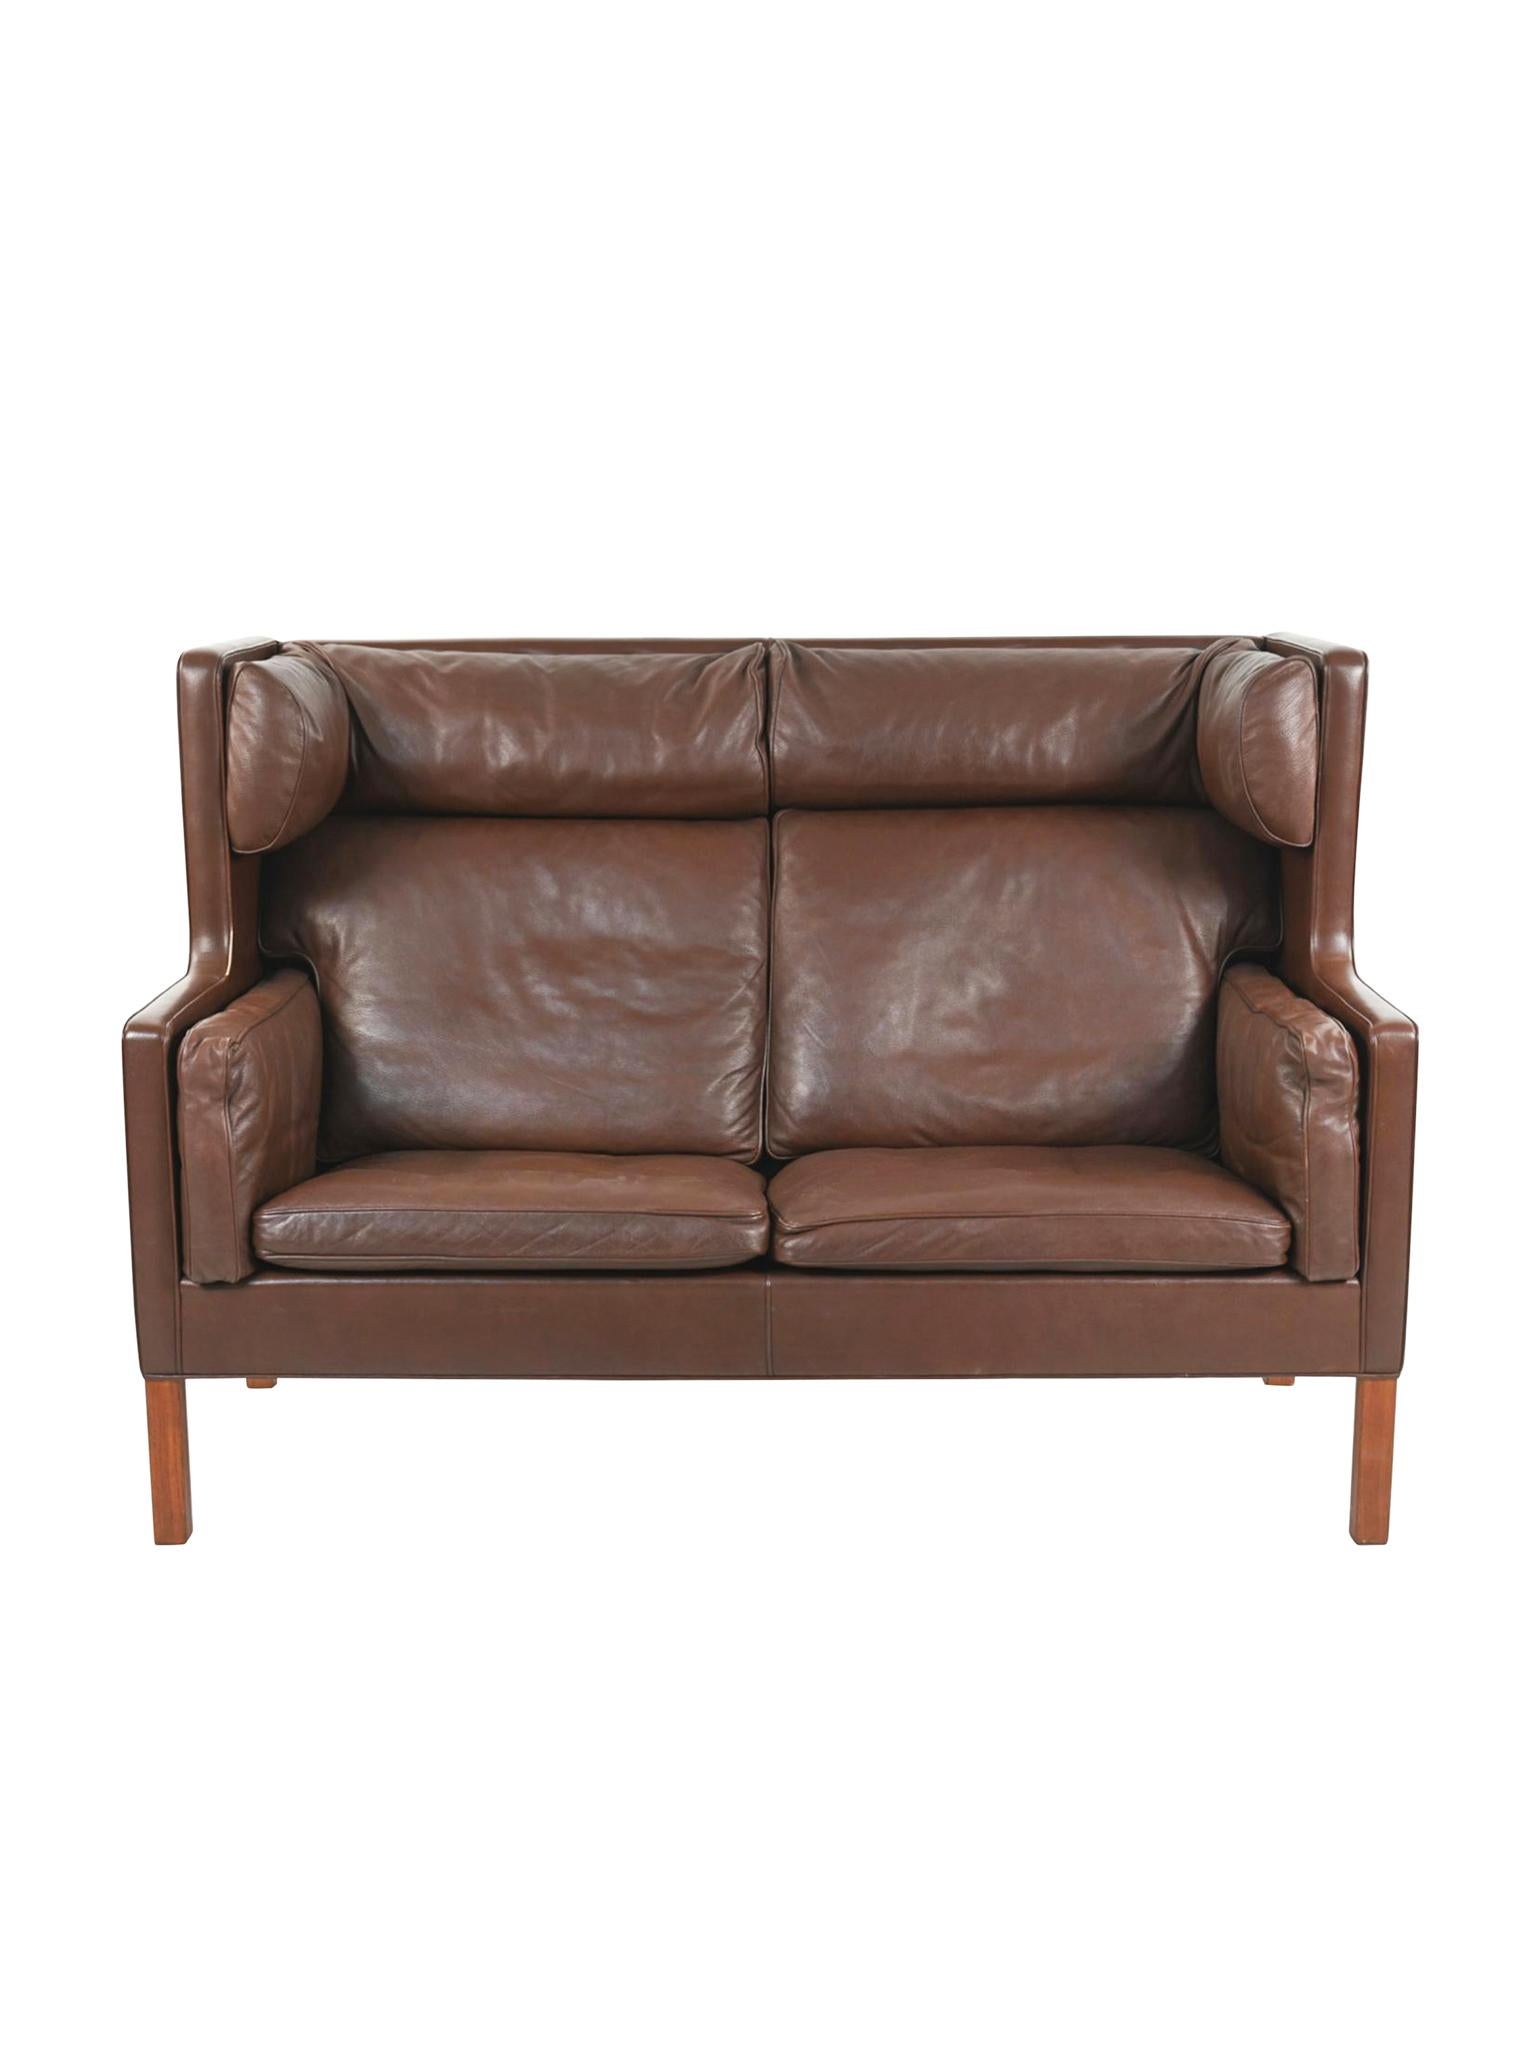 Dieses Coupé-Sofa aus braunem Semianilinleder wurde in den 1960er Jahren von Børge Mogensen für Fredericia entworfen. Strukturell hat das Sofa eine hohe, gepolsterte Rückenlehne, die an einen Ohrensessel erinnert und zu einer aufrechten, aber